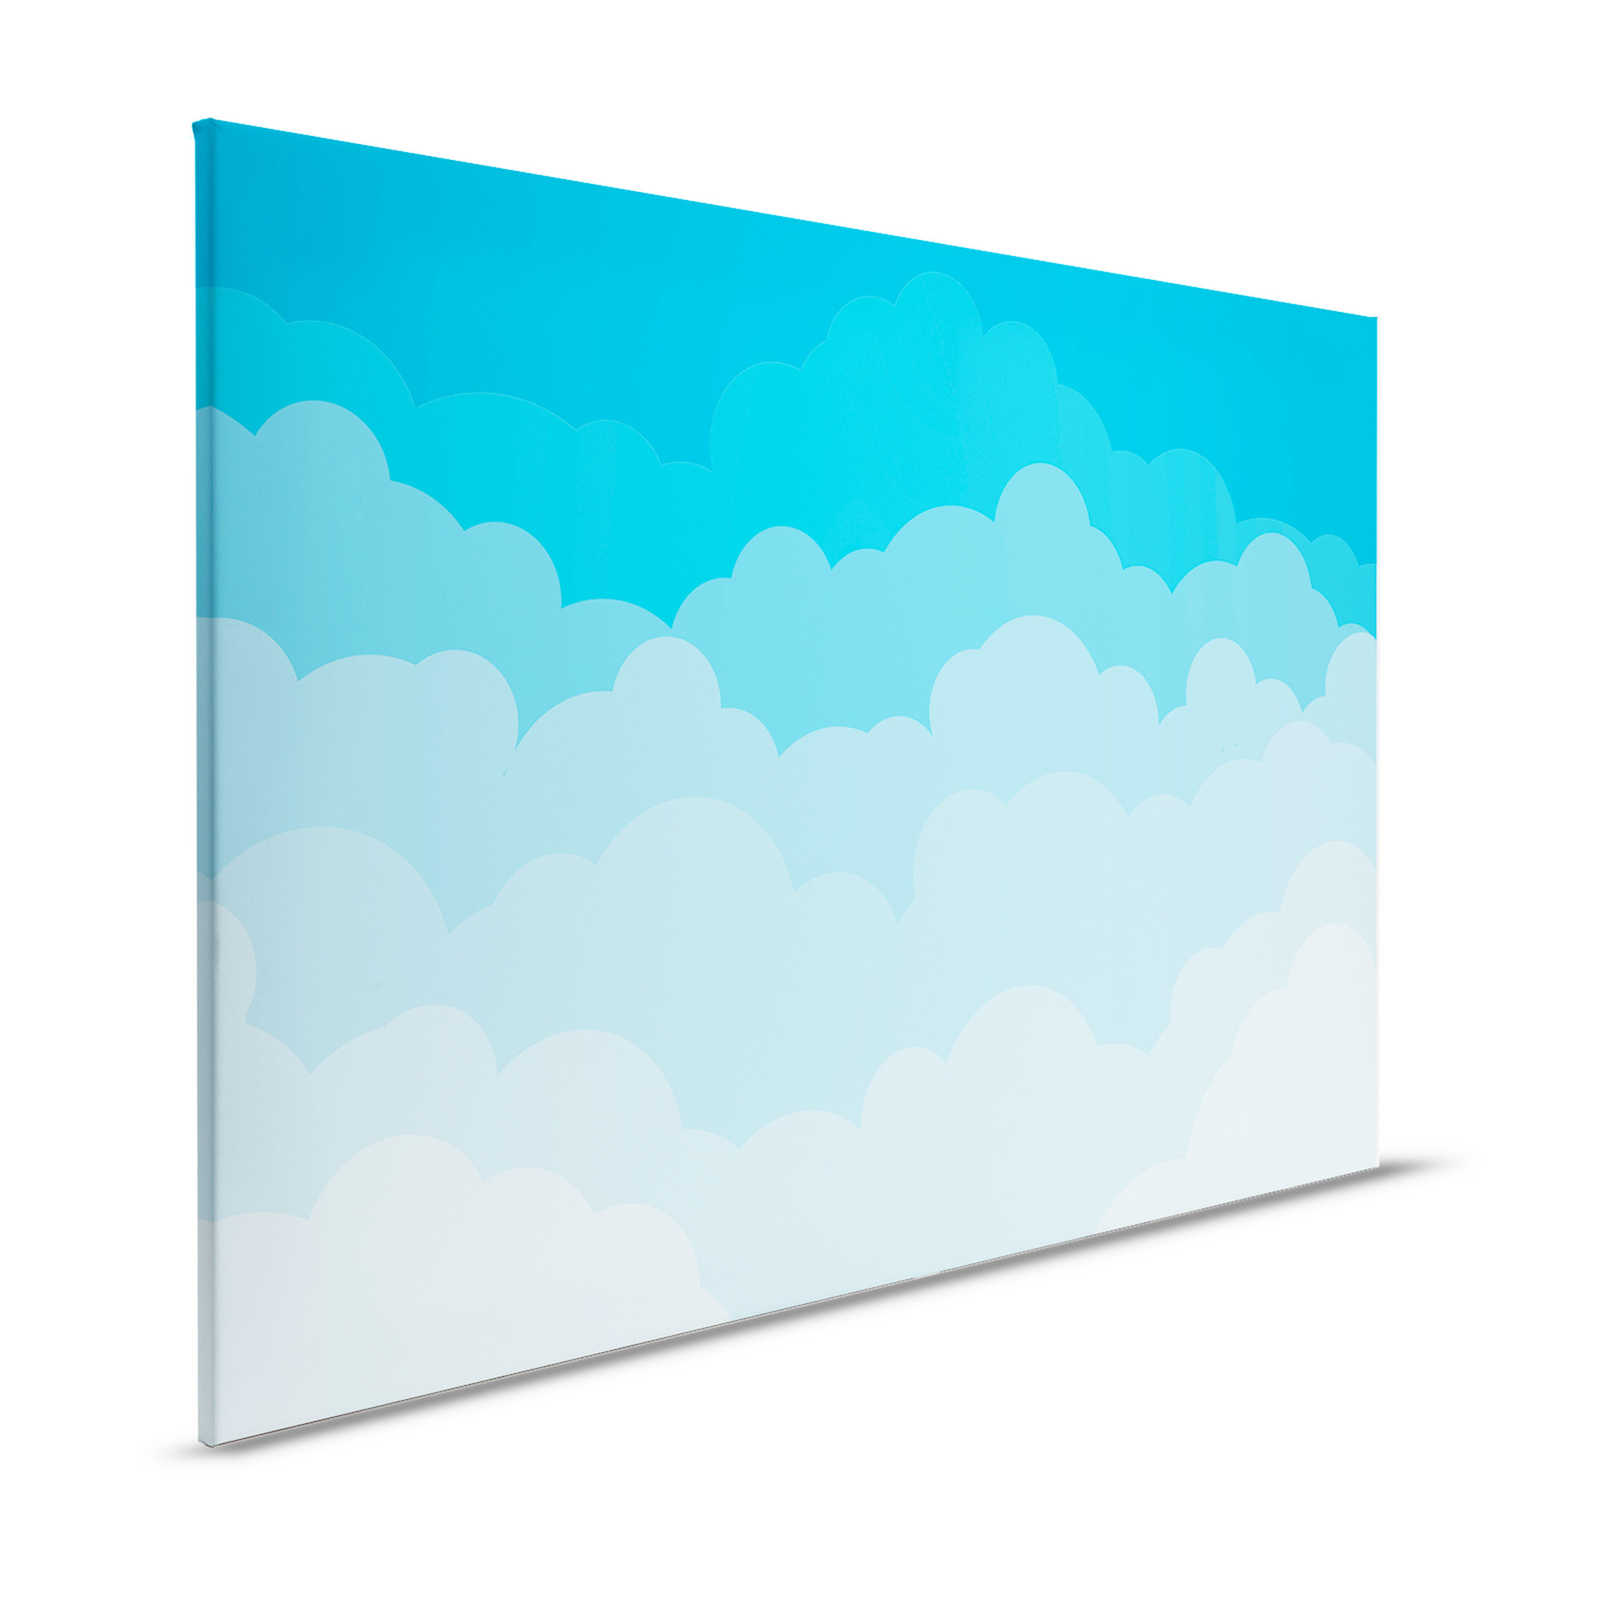             Tela Cielo con nuvole in stile fumetto - 120 cm x 80 cm
        